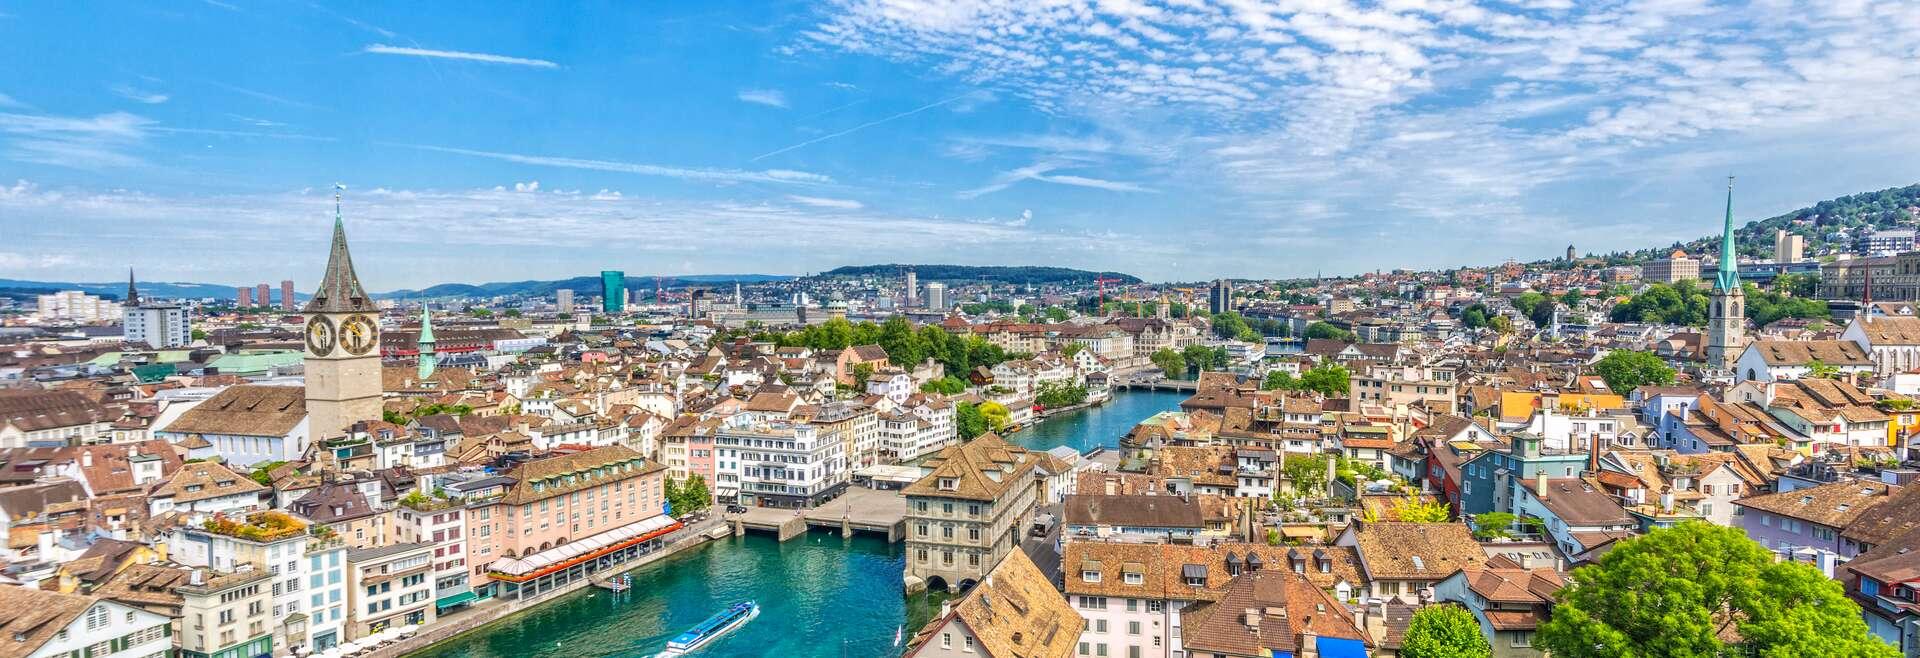 Séjour linguistique Suisse, Zurich